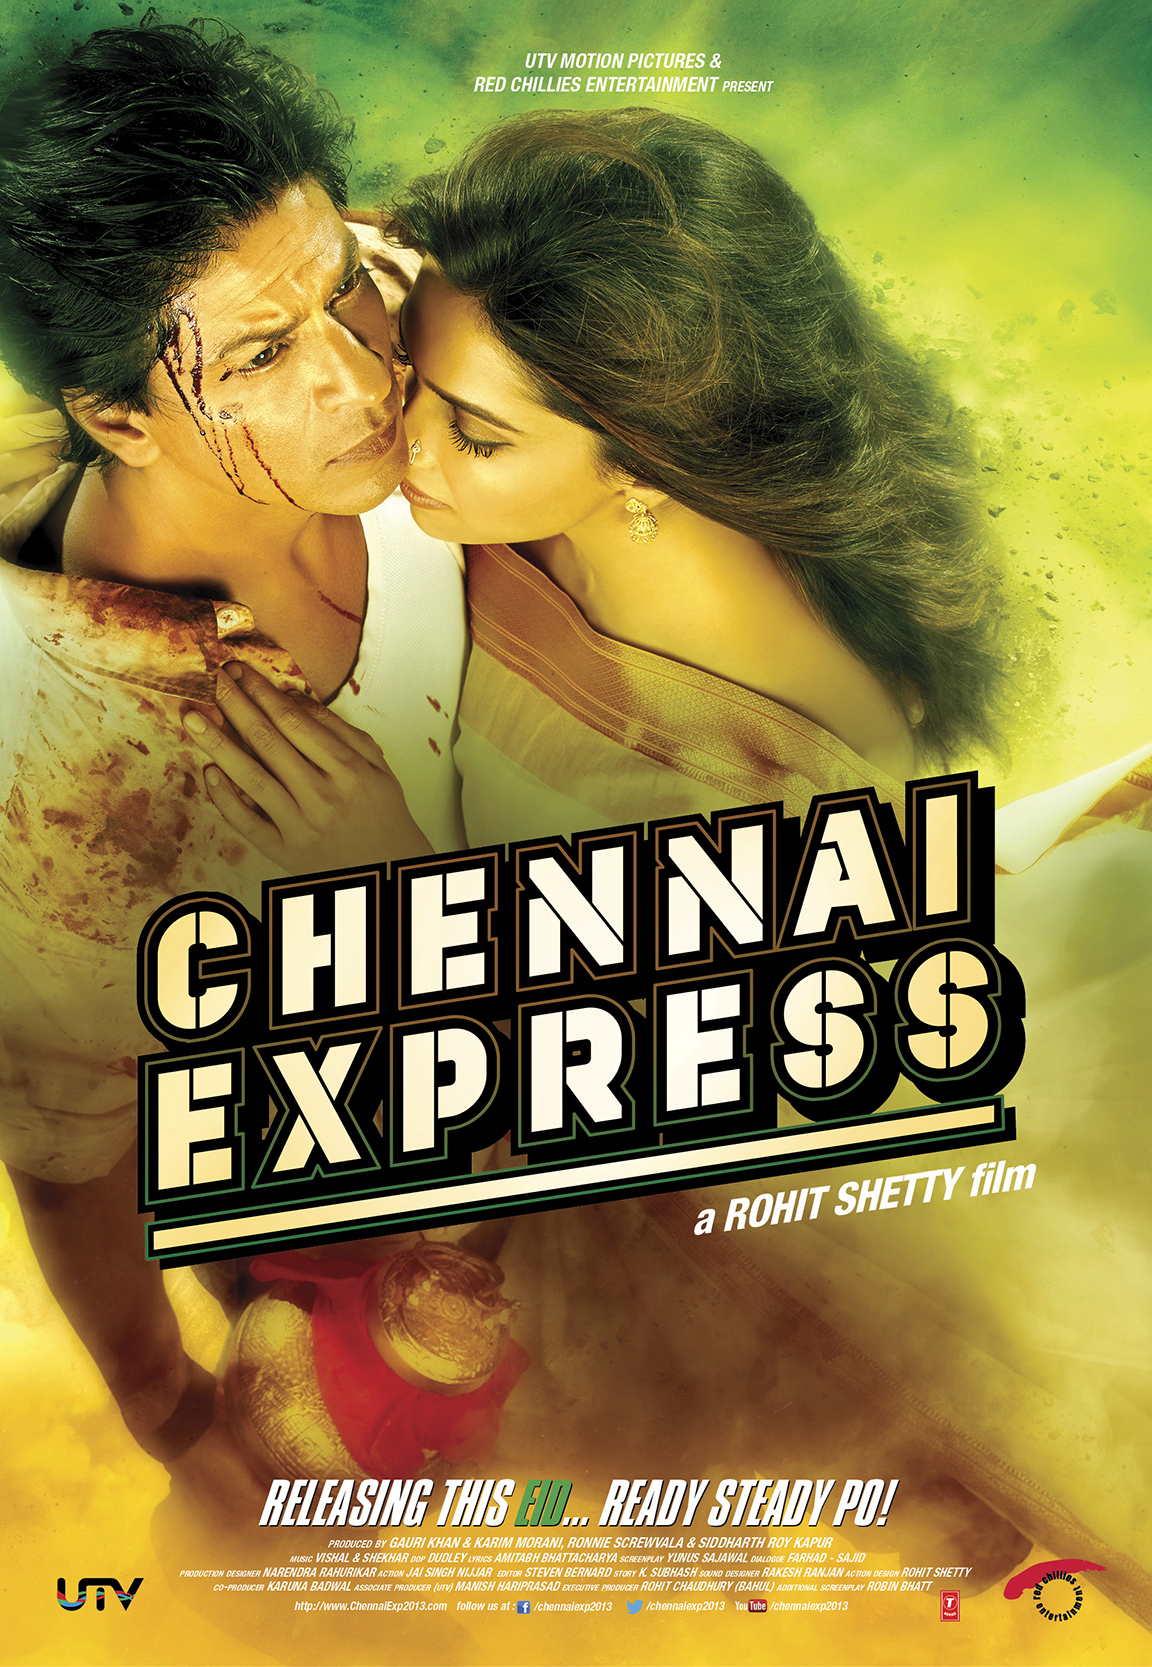 Shah Rukh Khan and Deepika Padukone in Chennai Express (2013)